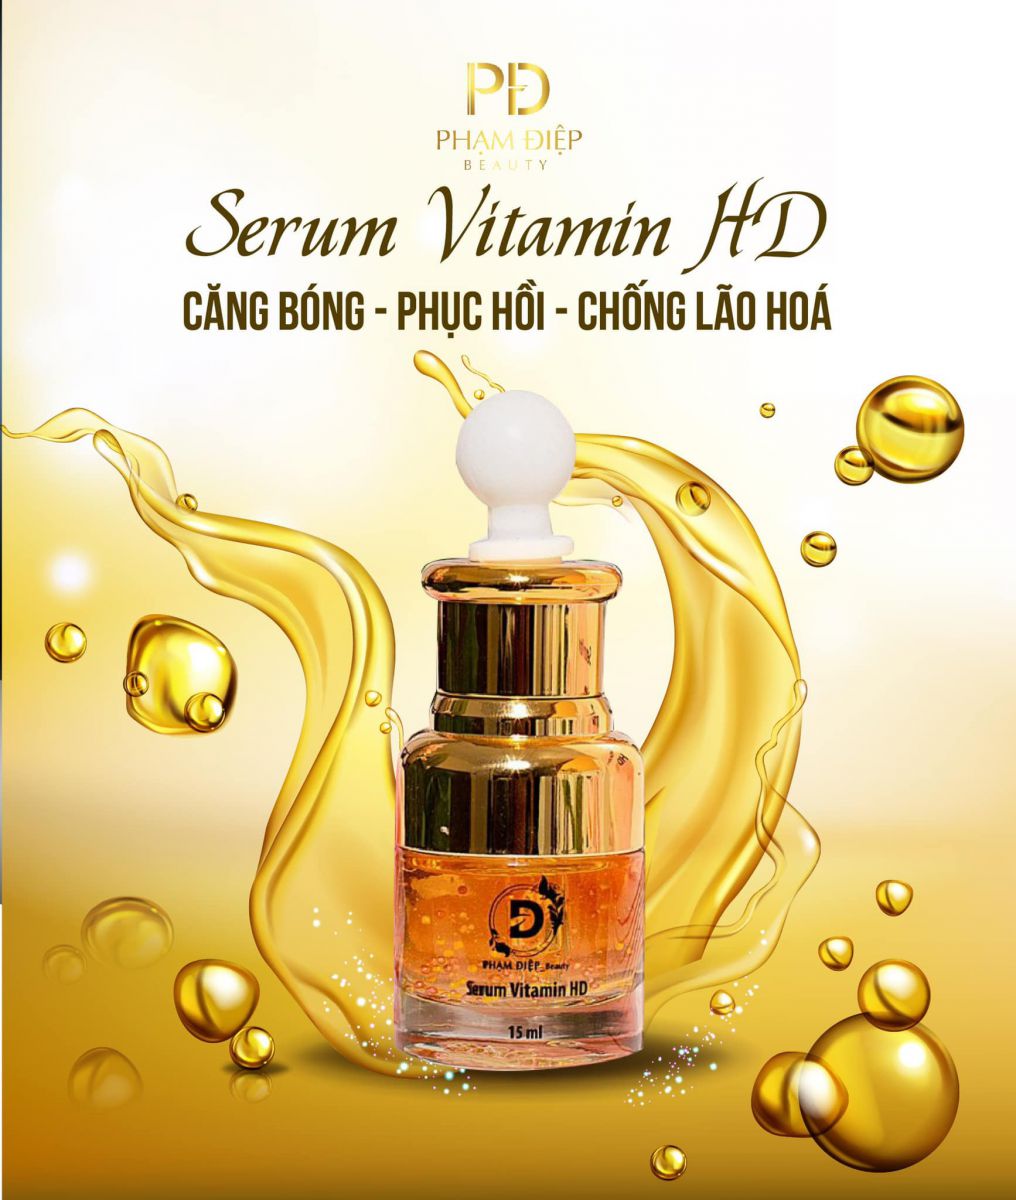 Serum Vitamin HD - Dưỡng da chuyên sâu